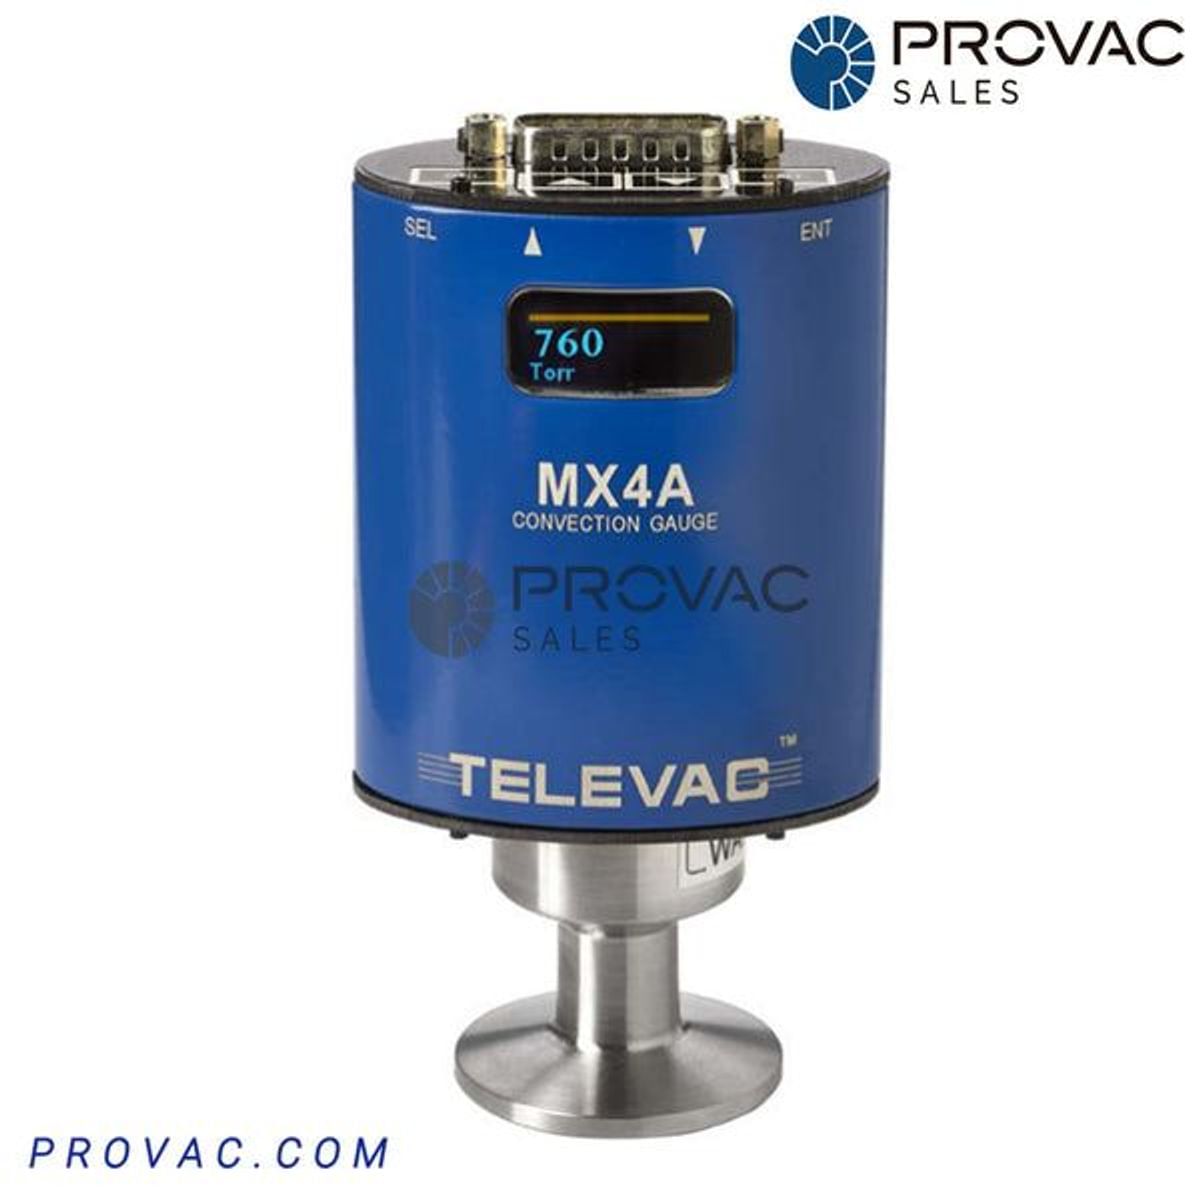 Televac MX4A Convection Active Vacuum Gauge Image 1